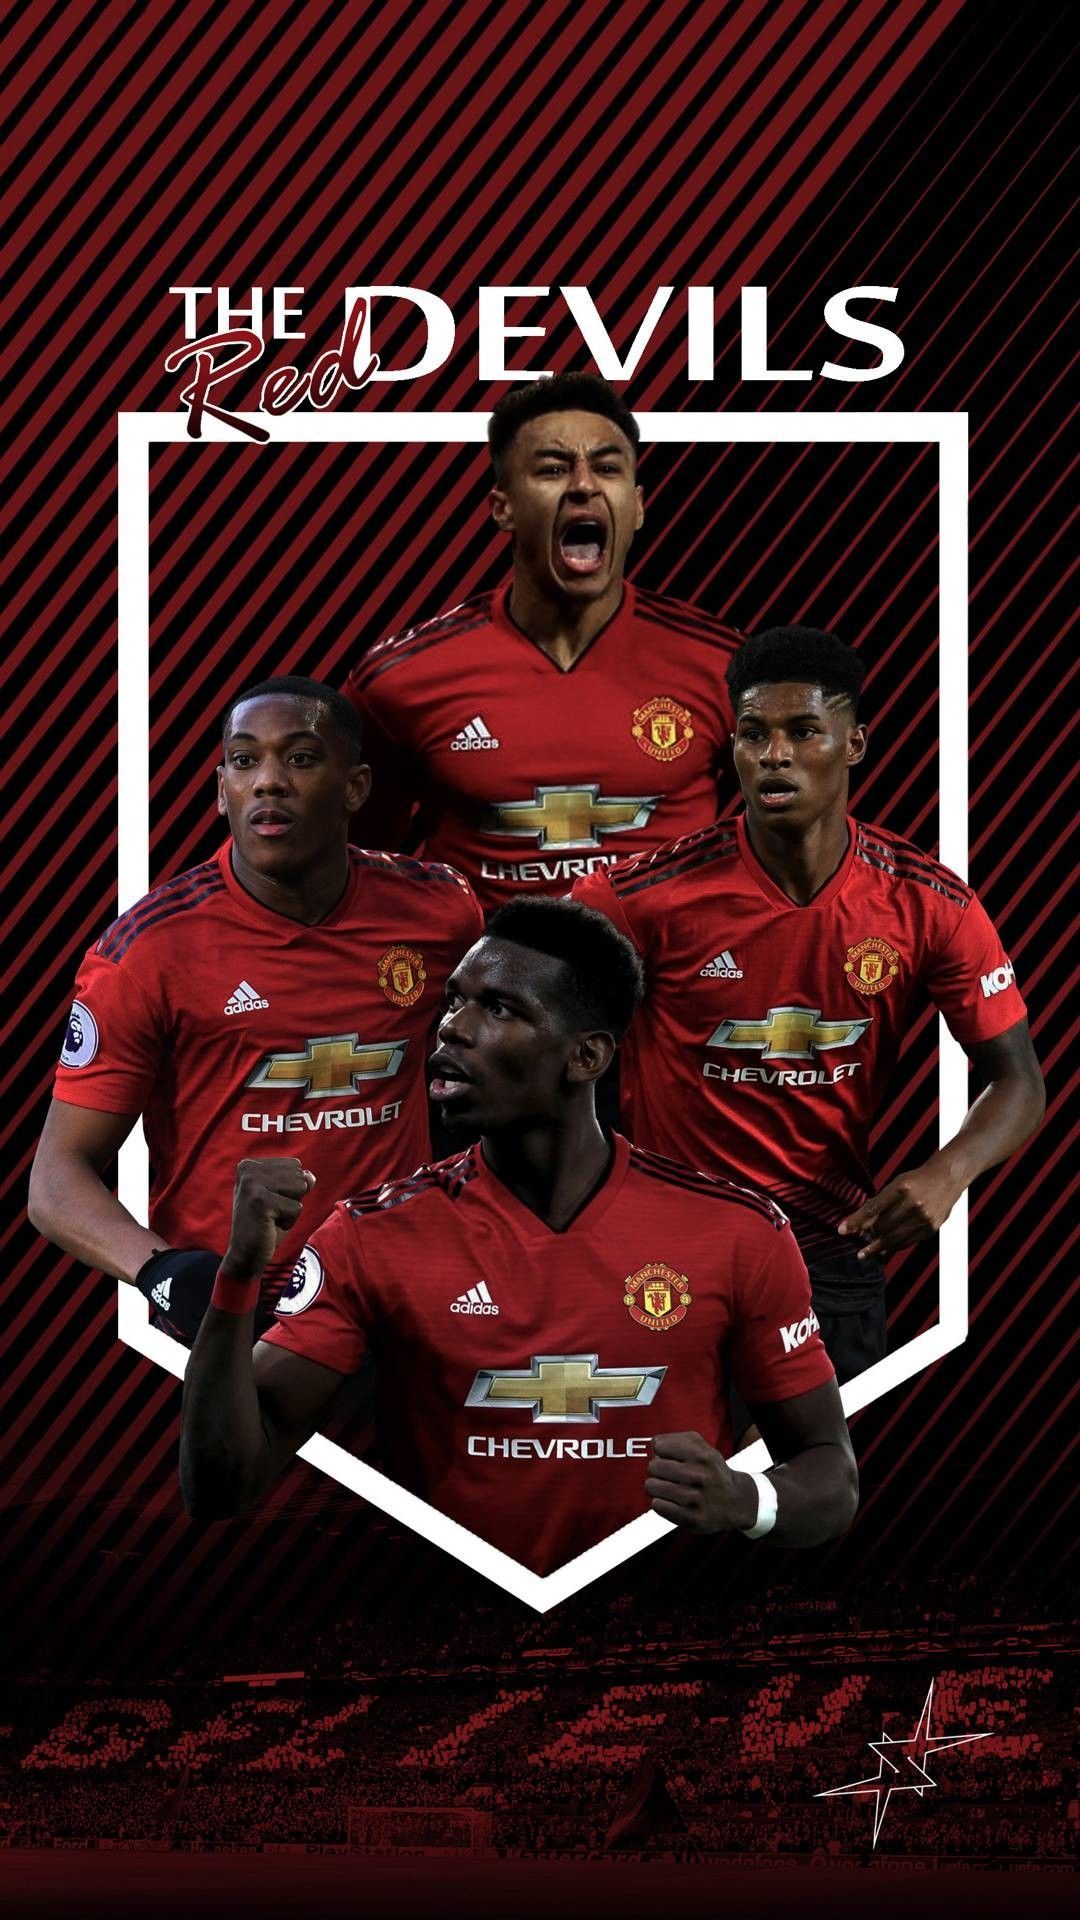 The Red Devils Man Utd wallpaper. Manchester united players, Manchester united logo, Manchester united poster